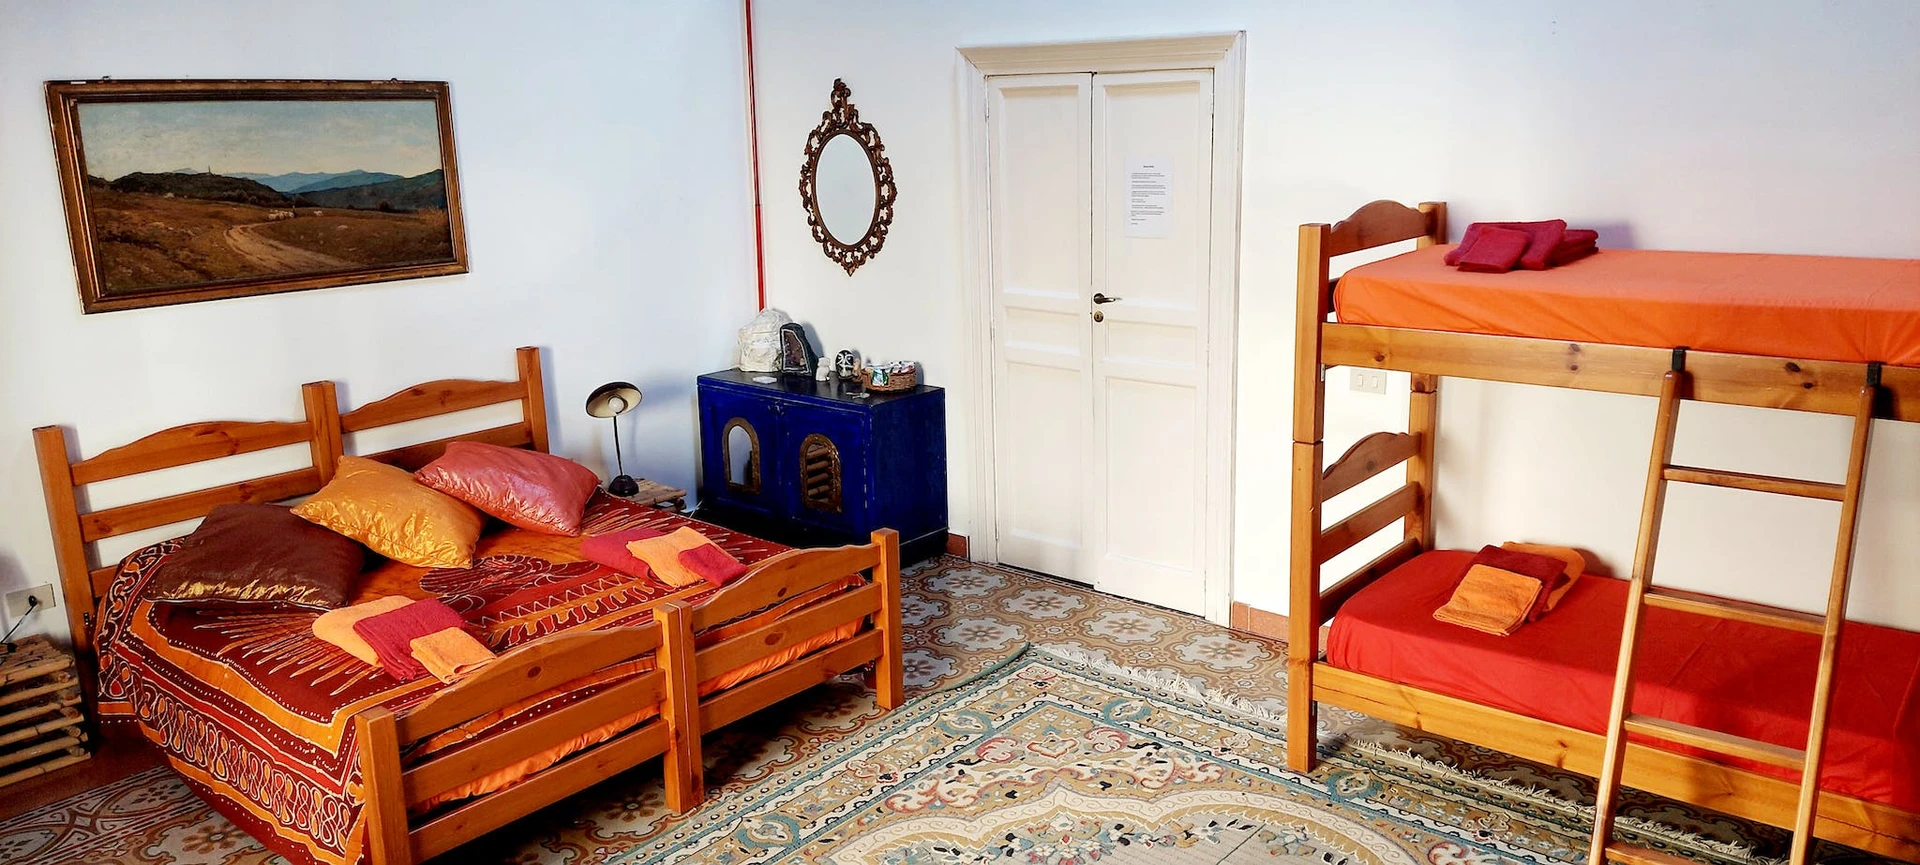 Alquiler de habitación en piso compartido en Palermo